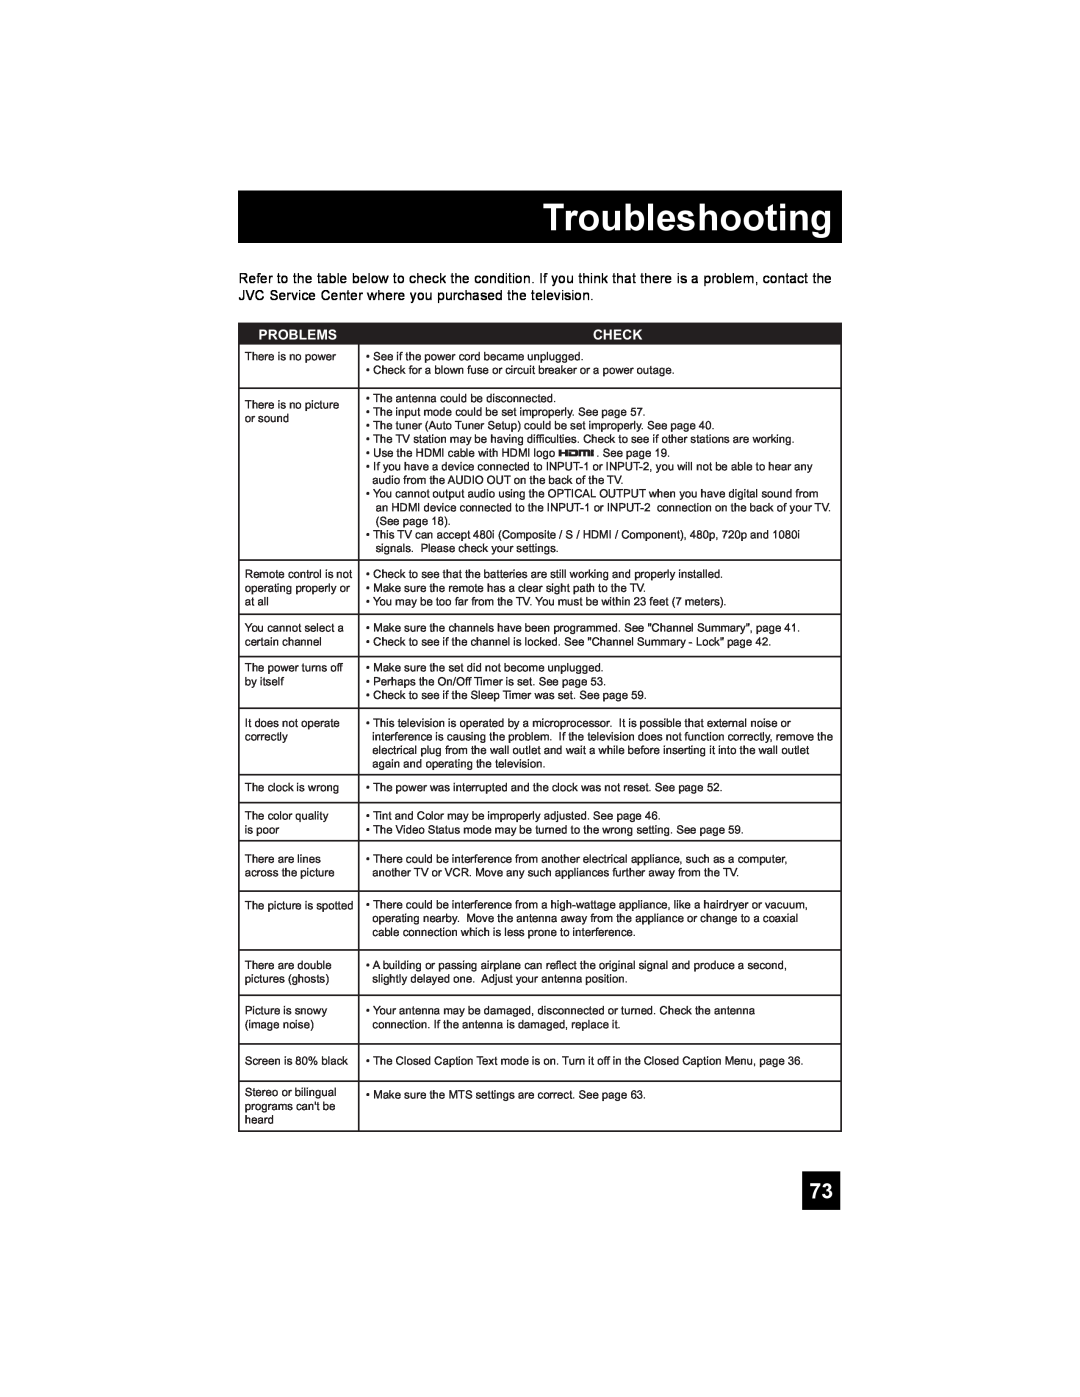 JVC LT-37X688, LT-42X688 manual Troubleshooting, Problems, Check 